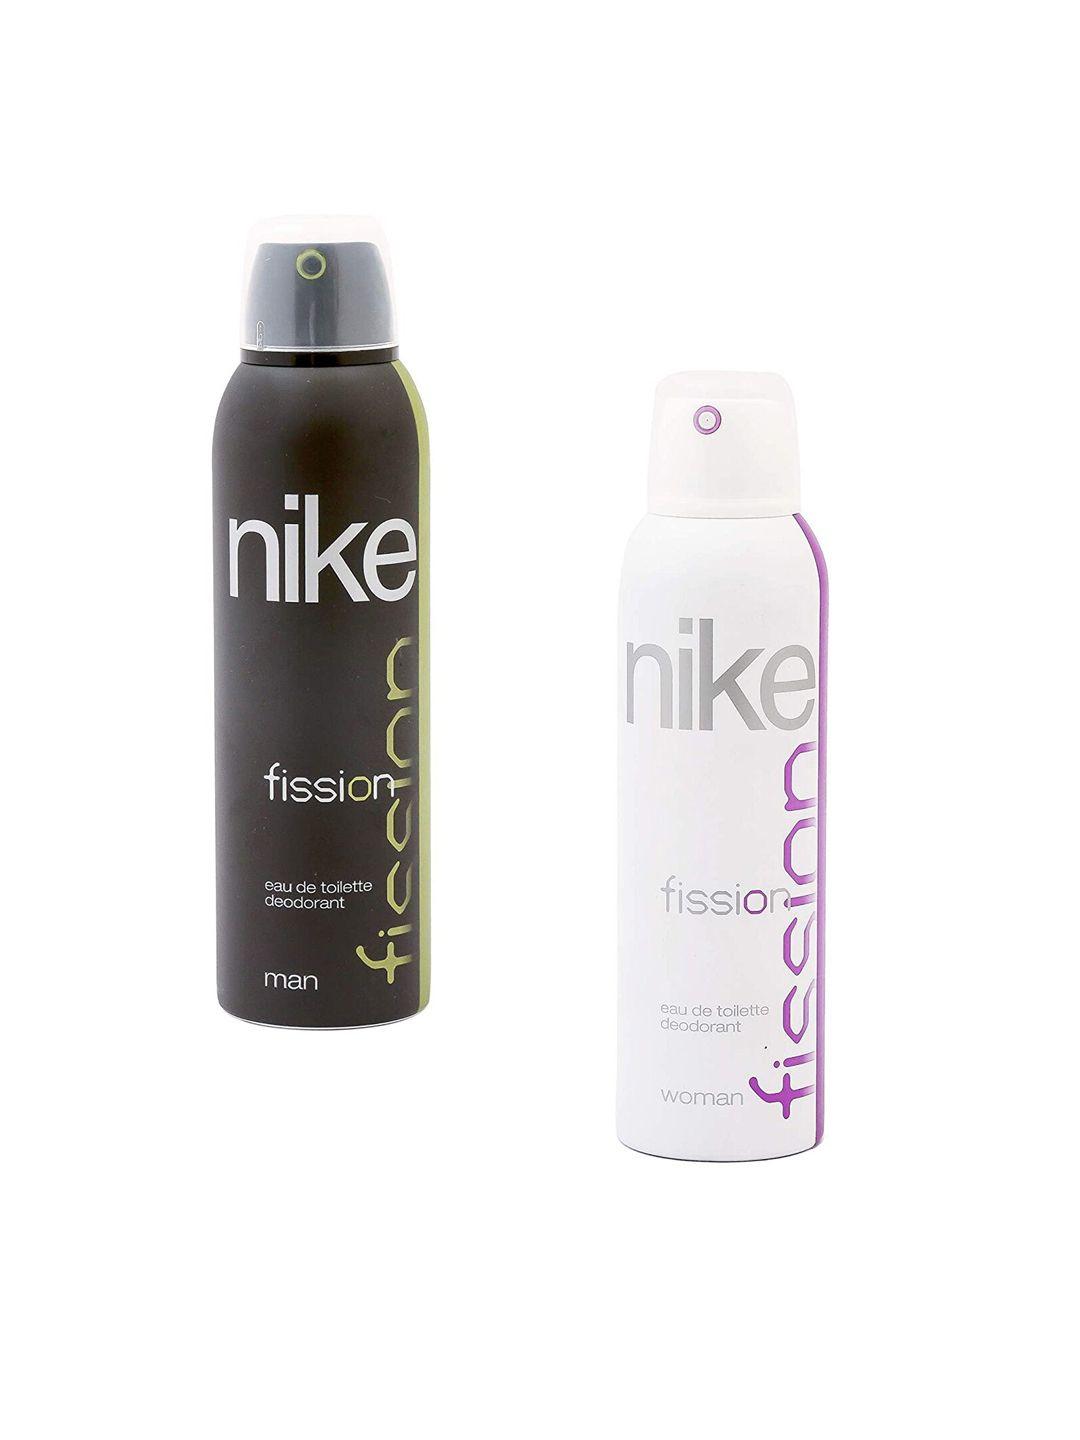 nike-set-of-2-fission-eau-de-toilette-deodorant---200ml-each